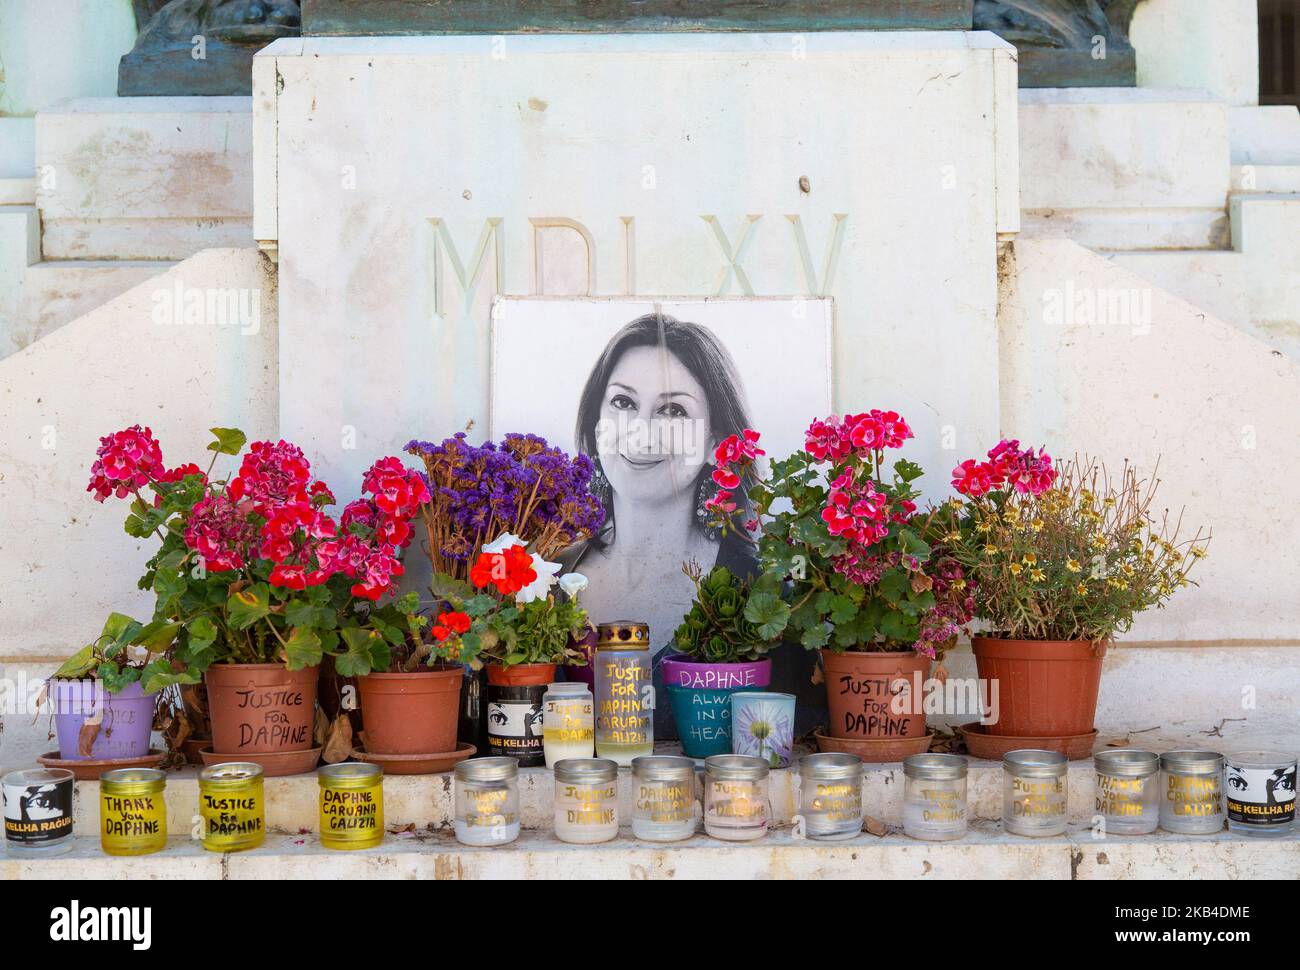 Memorial for Daphne Caruana Galizia outside the Law Courts, Valetta, Malta Stock Photo